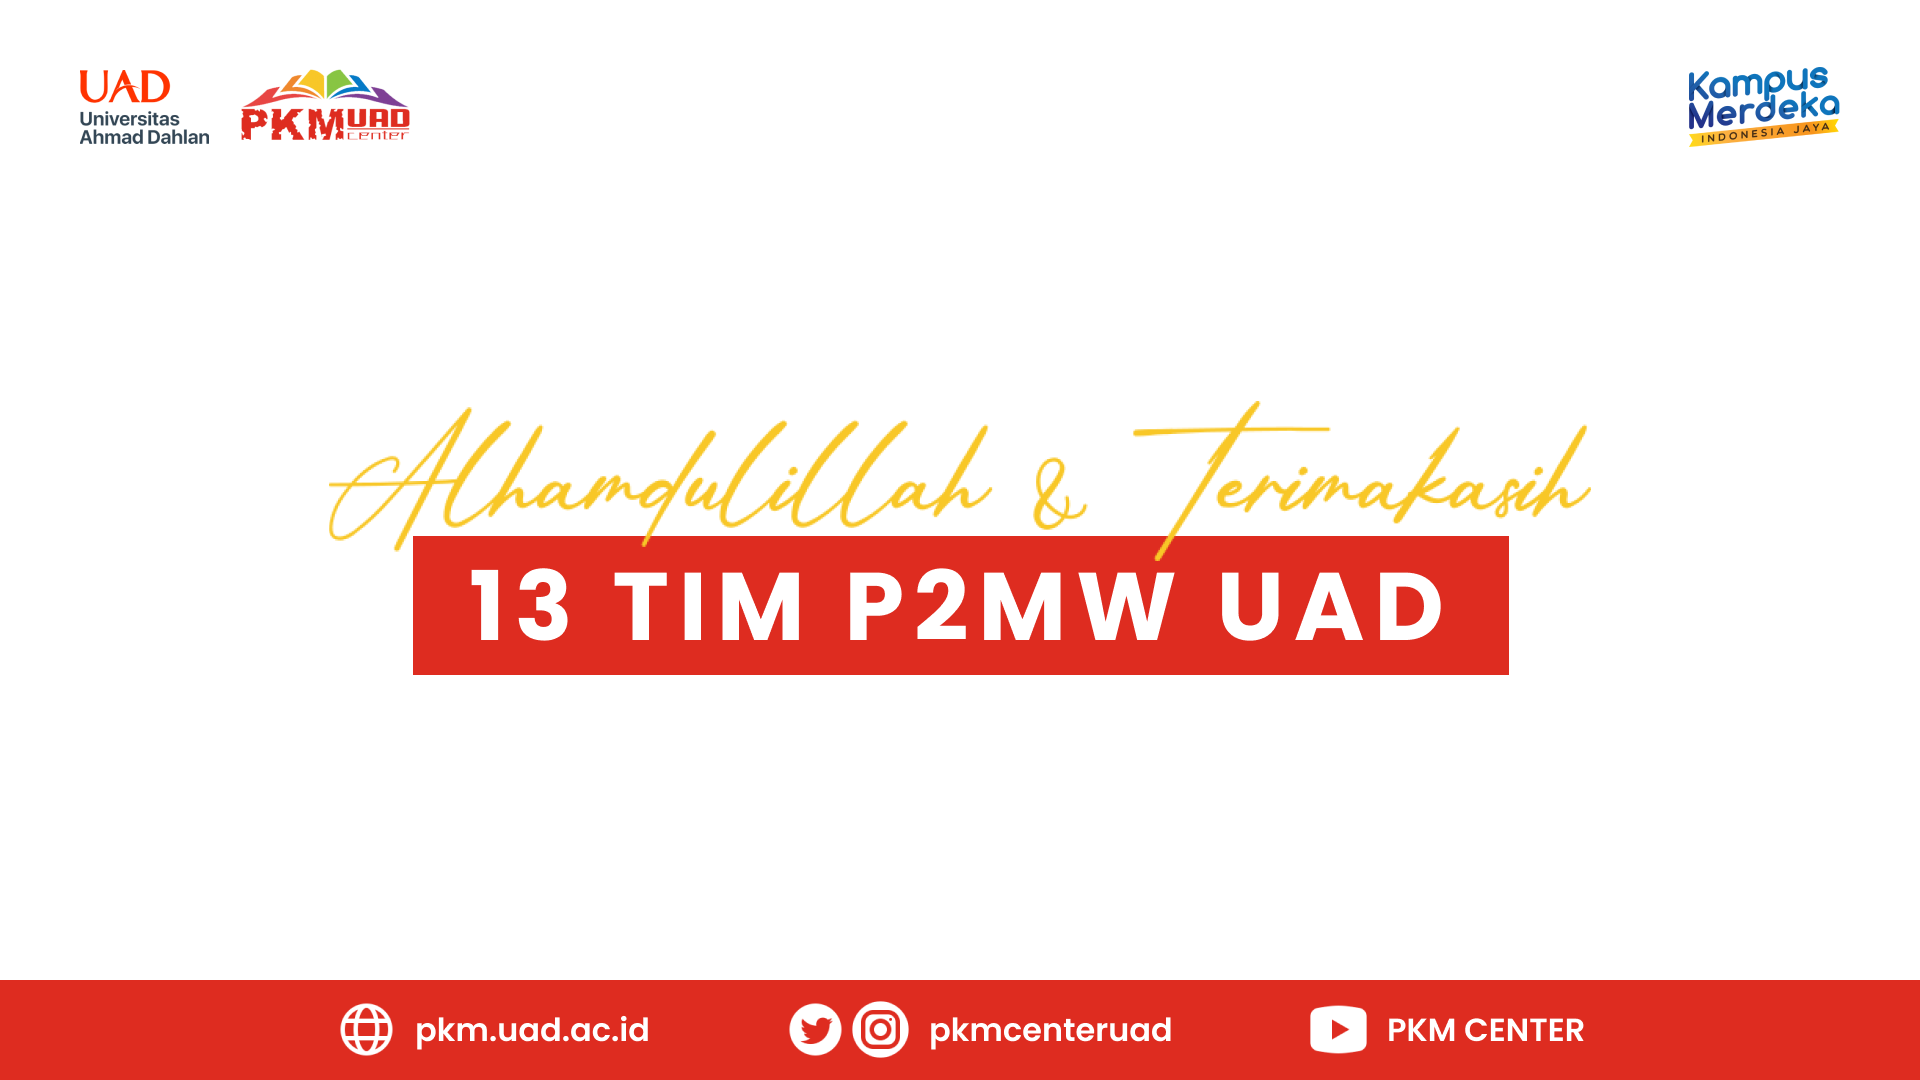 13 Proposal P2MW Universitas Ahmad Dahlan Berhasil Submit